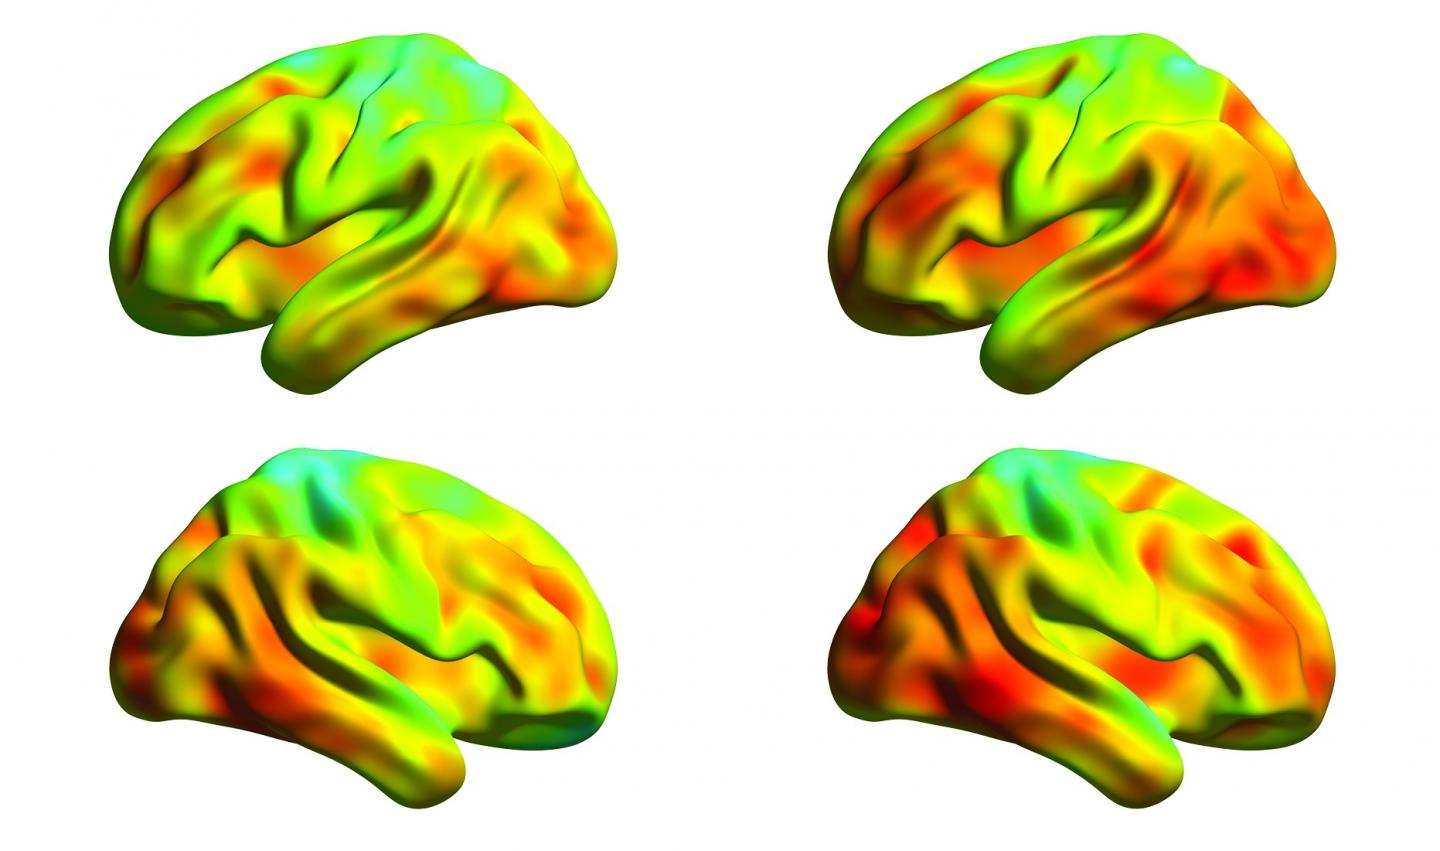 Tau Protein in Alzheimer Patient's Brain